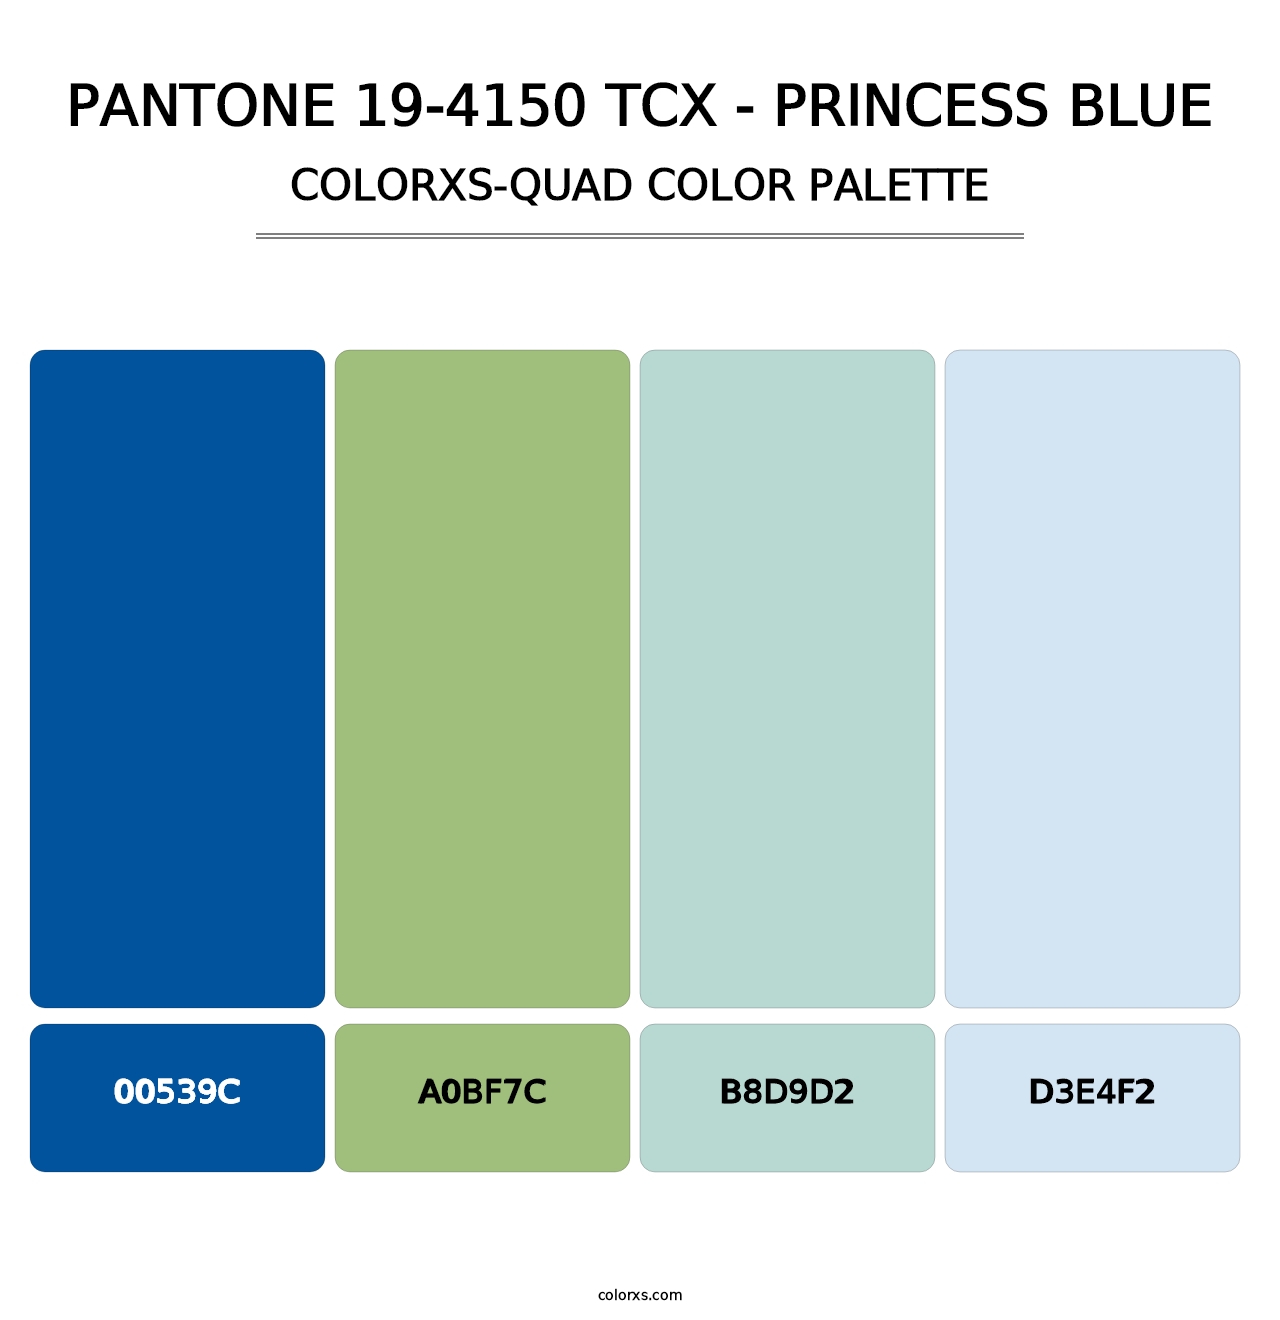 PANTONE 19-4150 TCX - Princess Blue - Colorxs Quad Palette